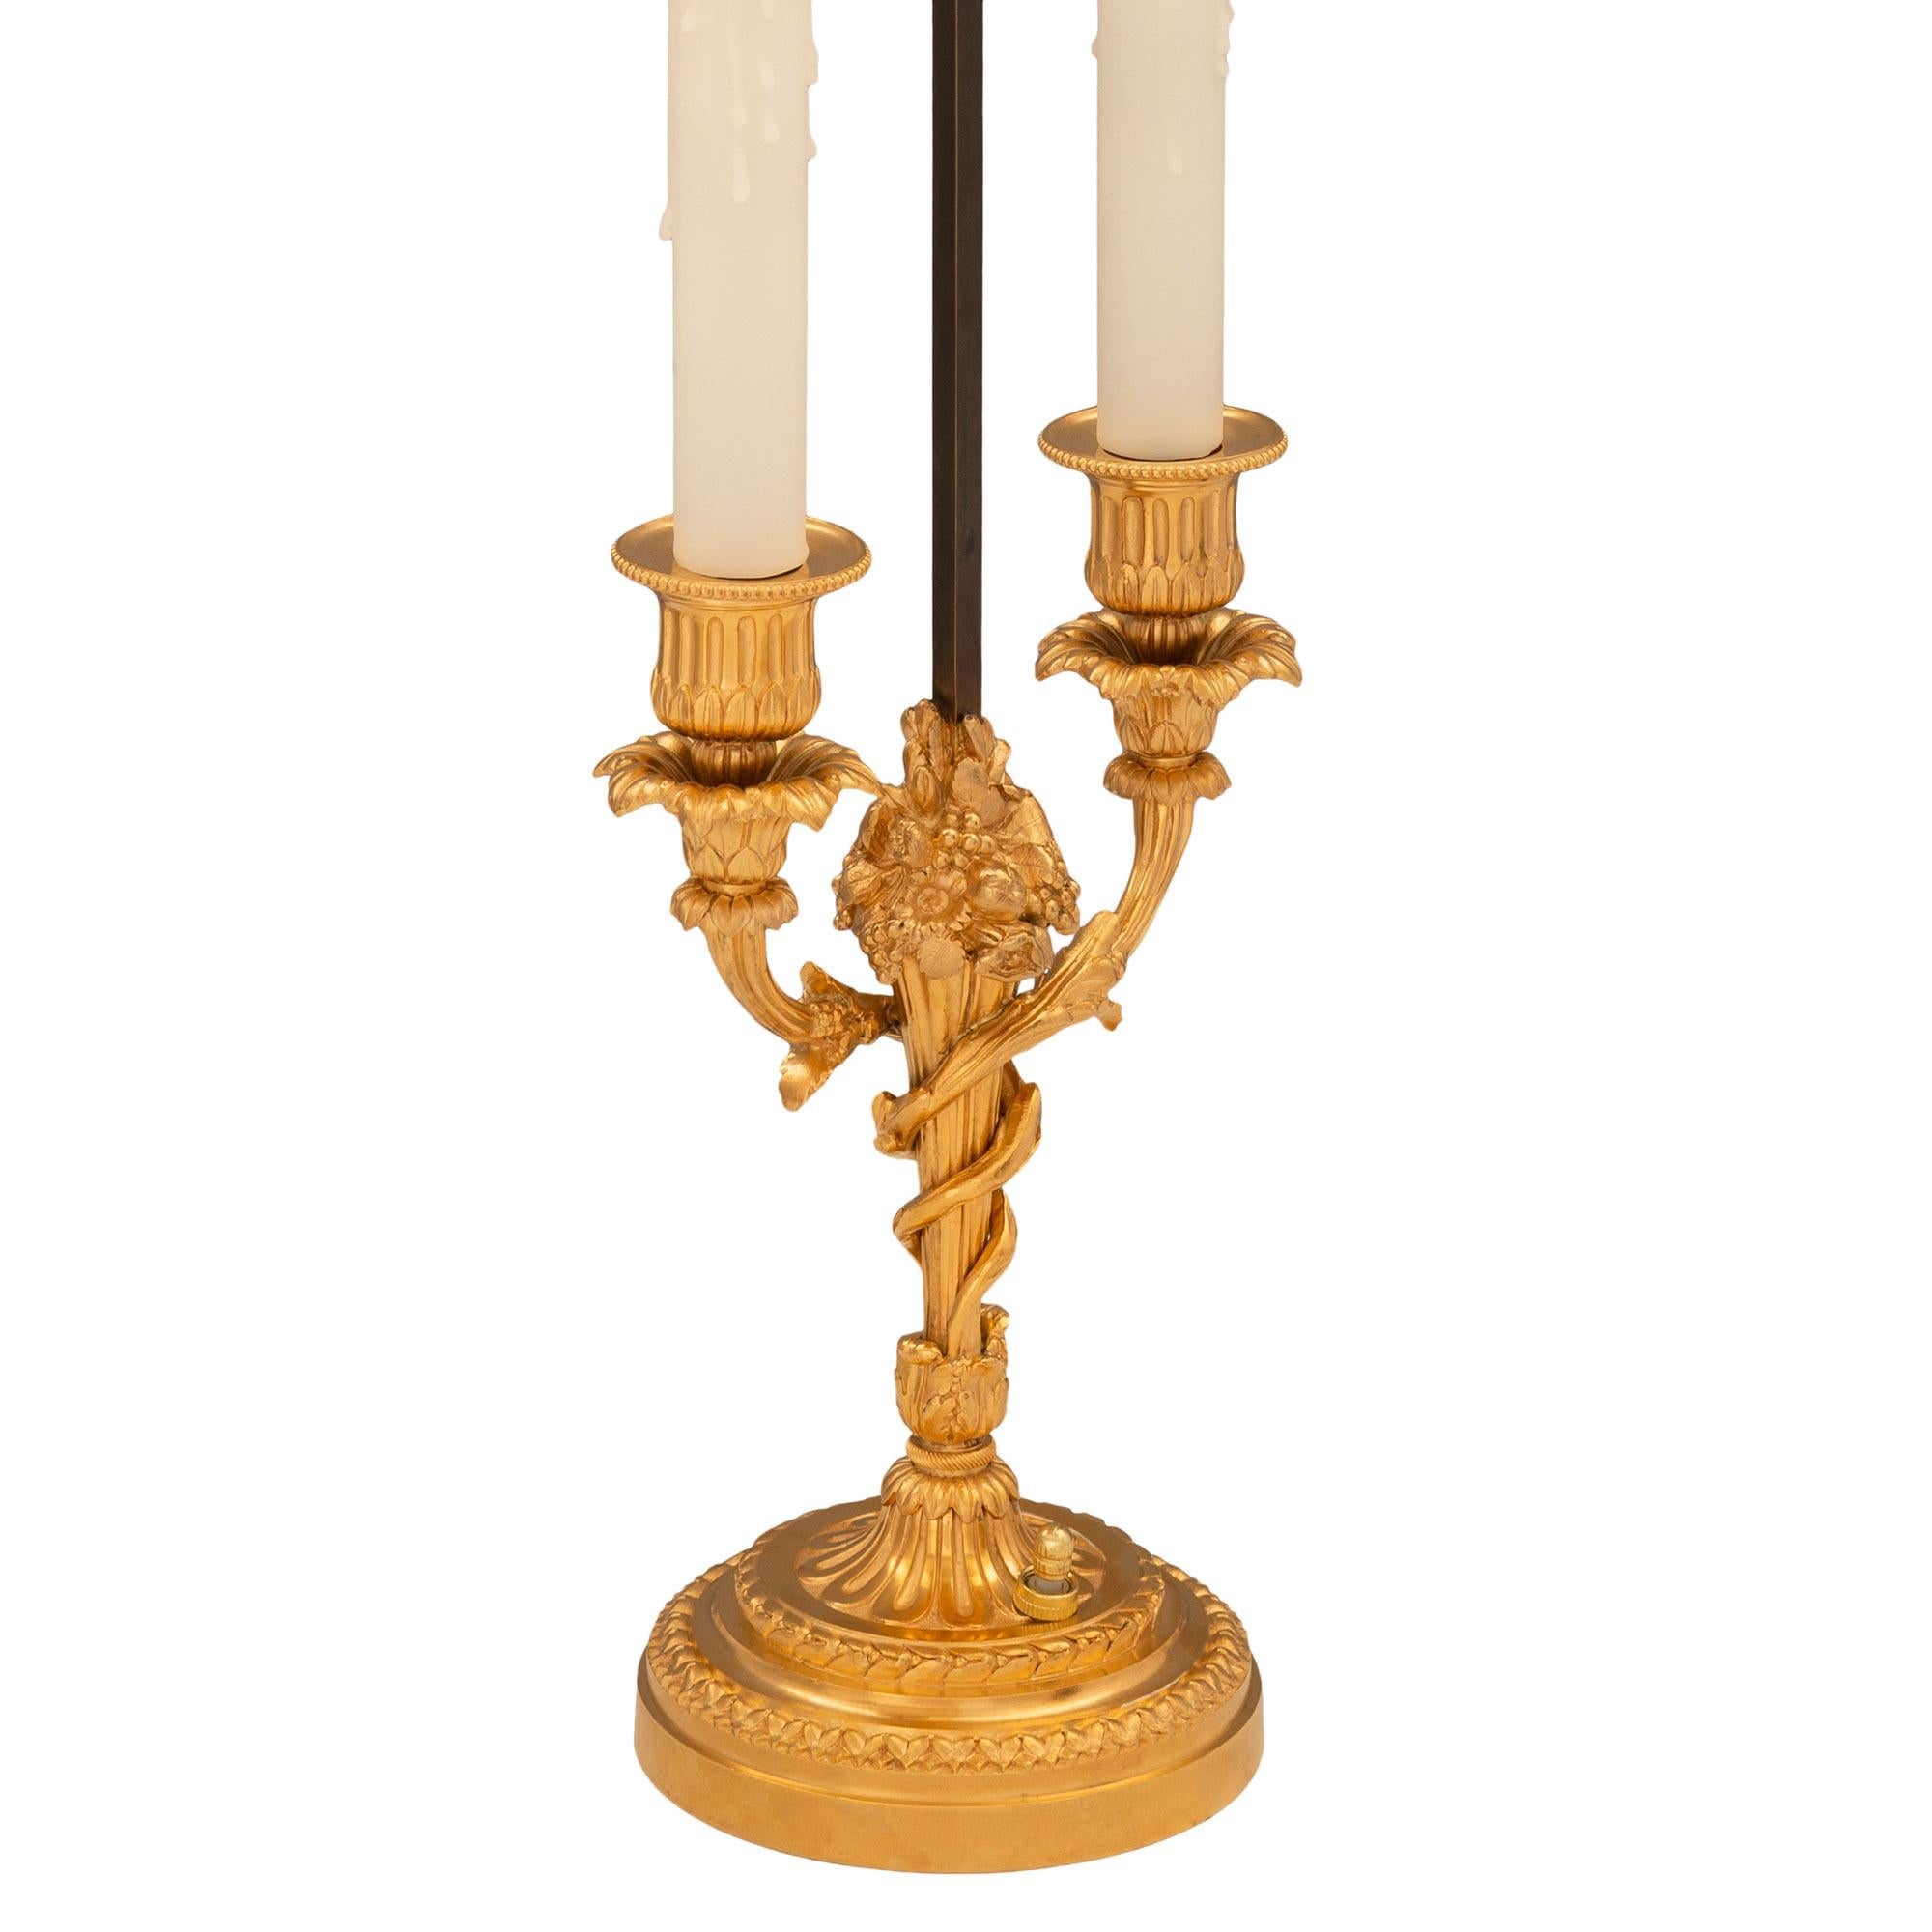 Une paire de lampes en bronze doré de style Louis XVI du 19ème siècle signée Vian. Chaque lampe à deux bras est surélevée par une base circulaire au design finement marbré et décoré de magnifiques bandes feuillues. Les supports centraux fuselés et